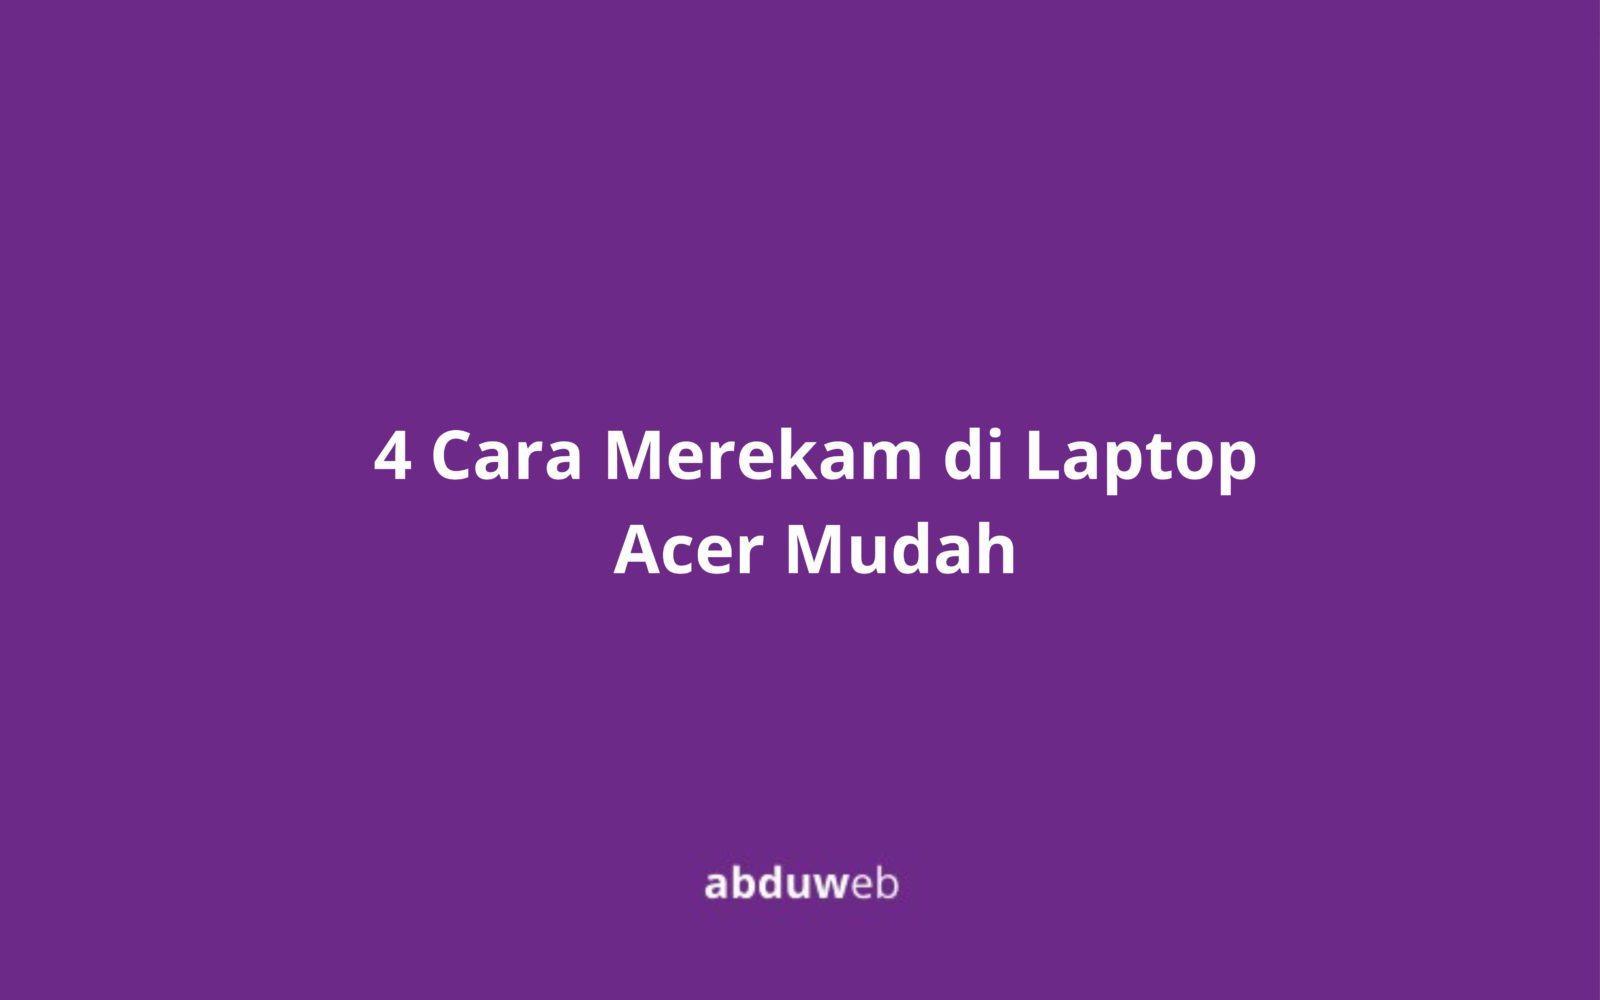 4 Cara Merekam di Laptop Acer Mudah